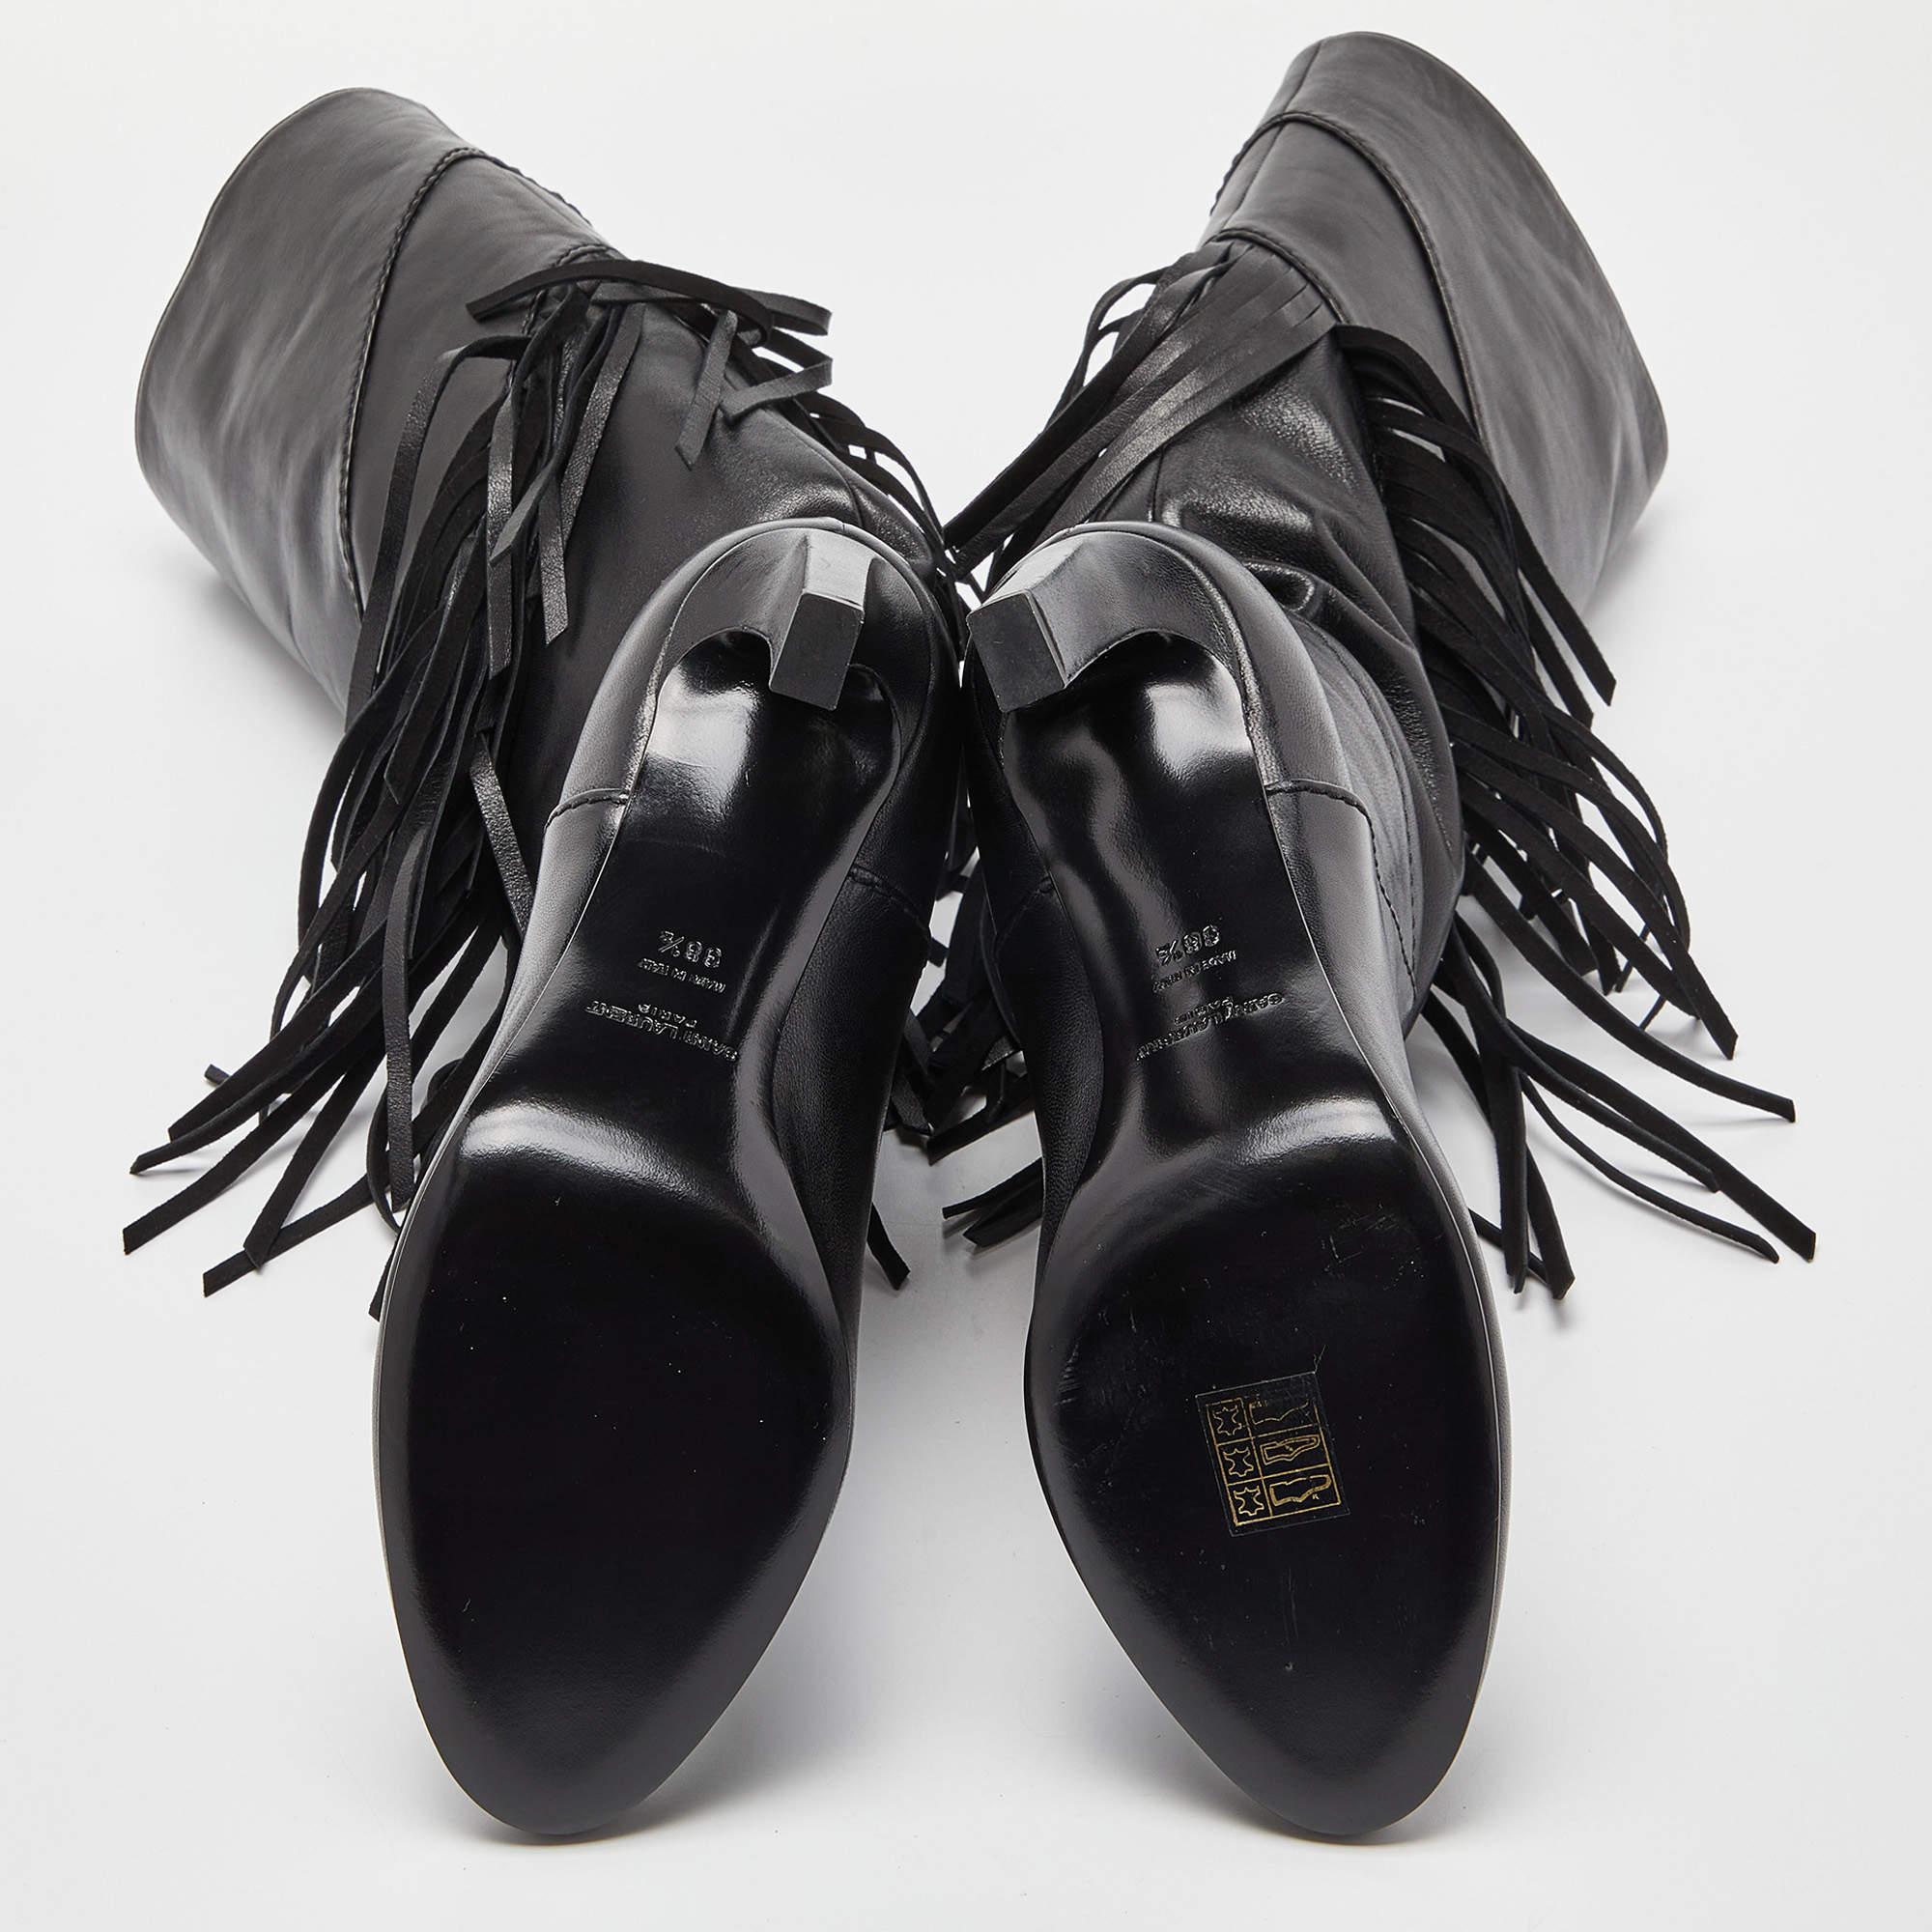 Saint Laurent - Bottes Grace à genoux en cuir noir à franges - Taille 38,5 6